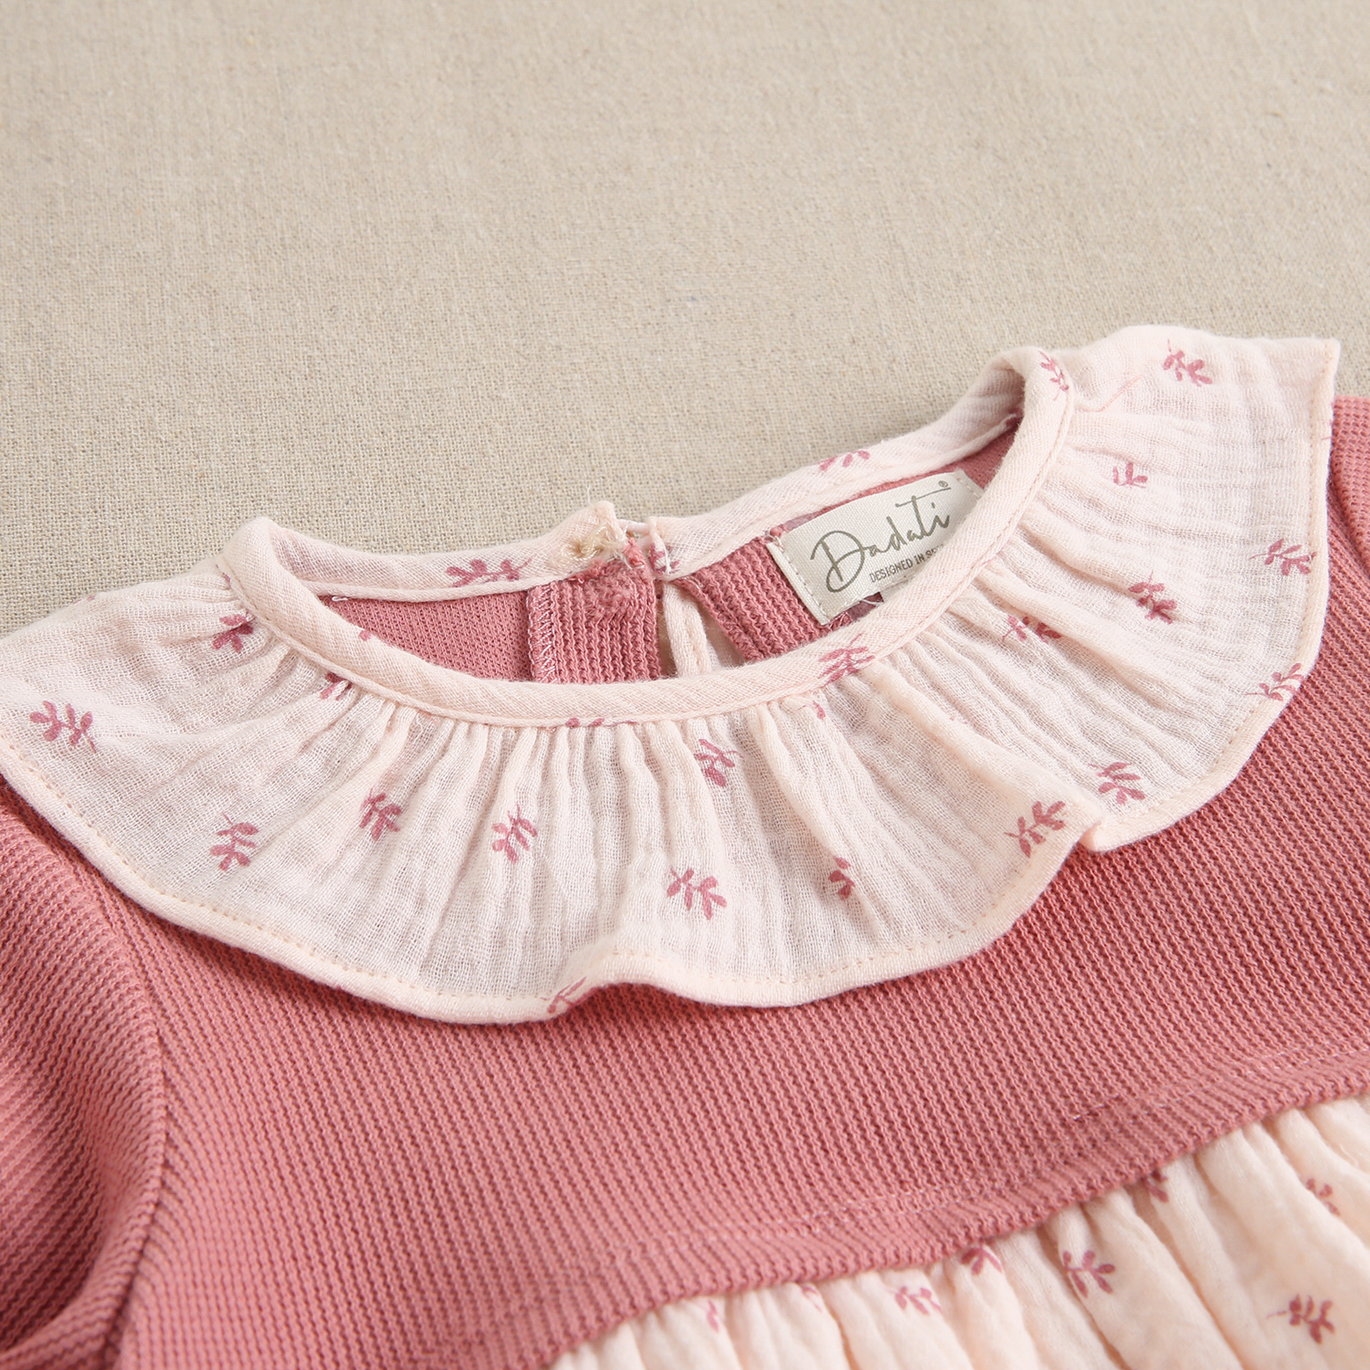 Imagen de Vestido de bebé niña combinado de color rosa